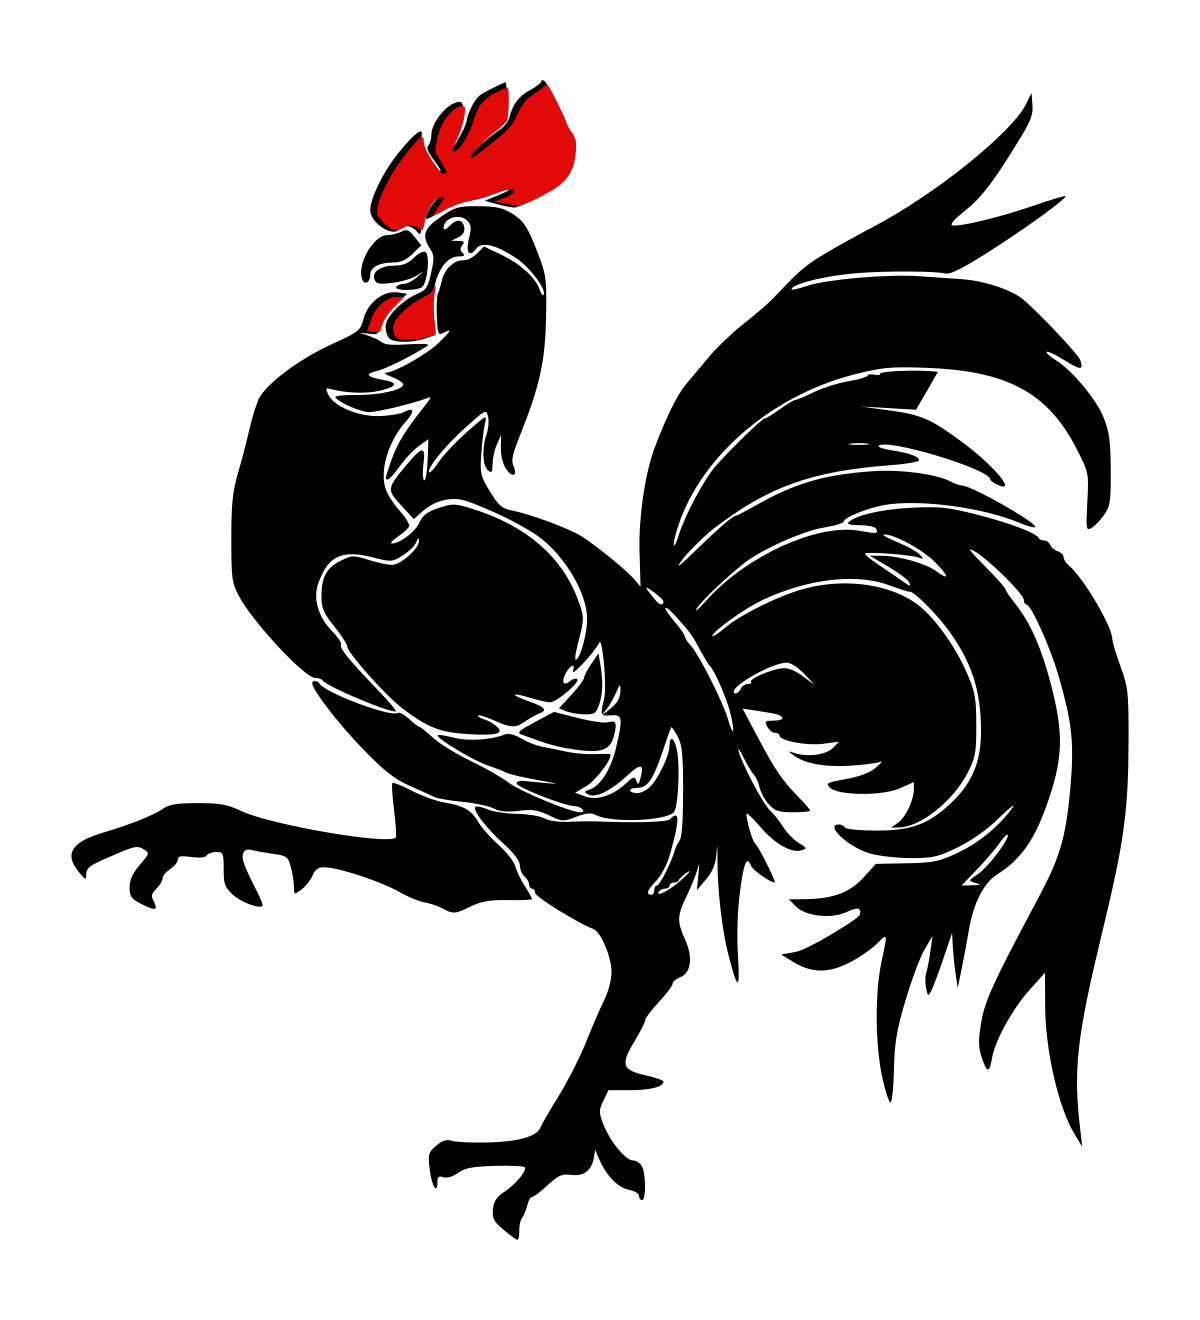 Петух галльский символ